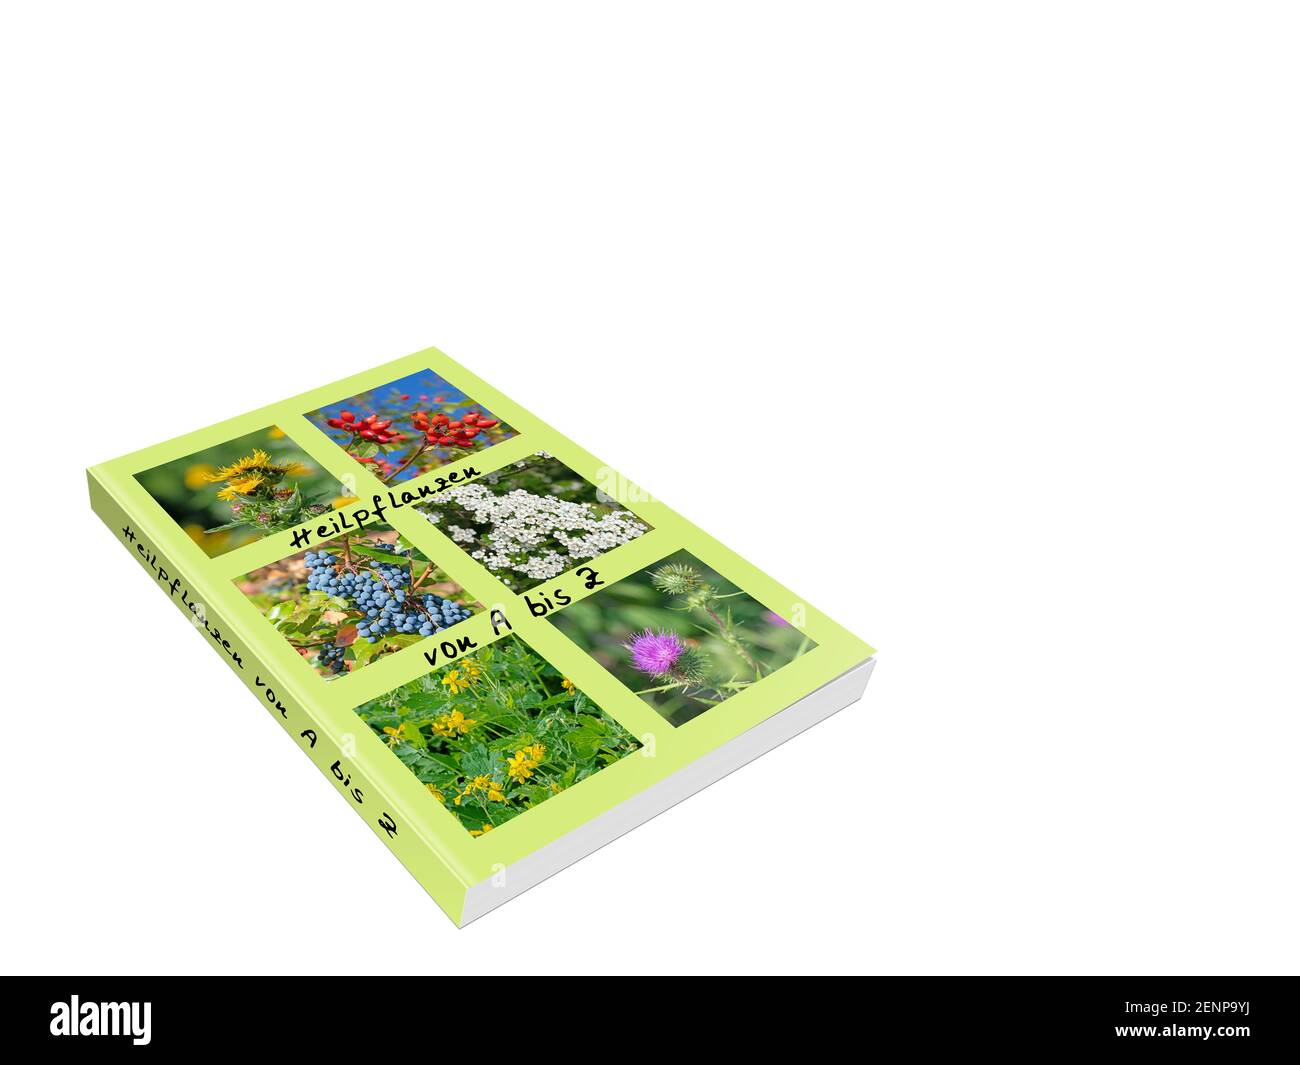 Libro con 'Heilpflanzen', traducción 'plantas edicinales' sobre fondo blanco, ilustración 3d Foto de stock